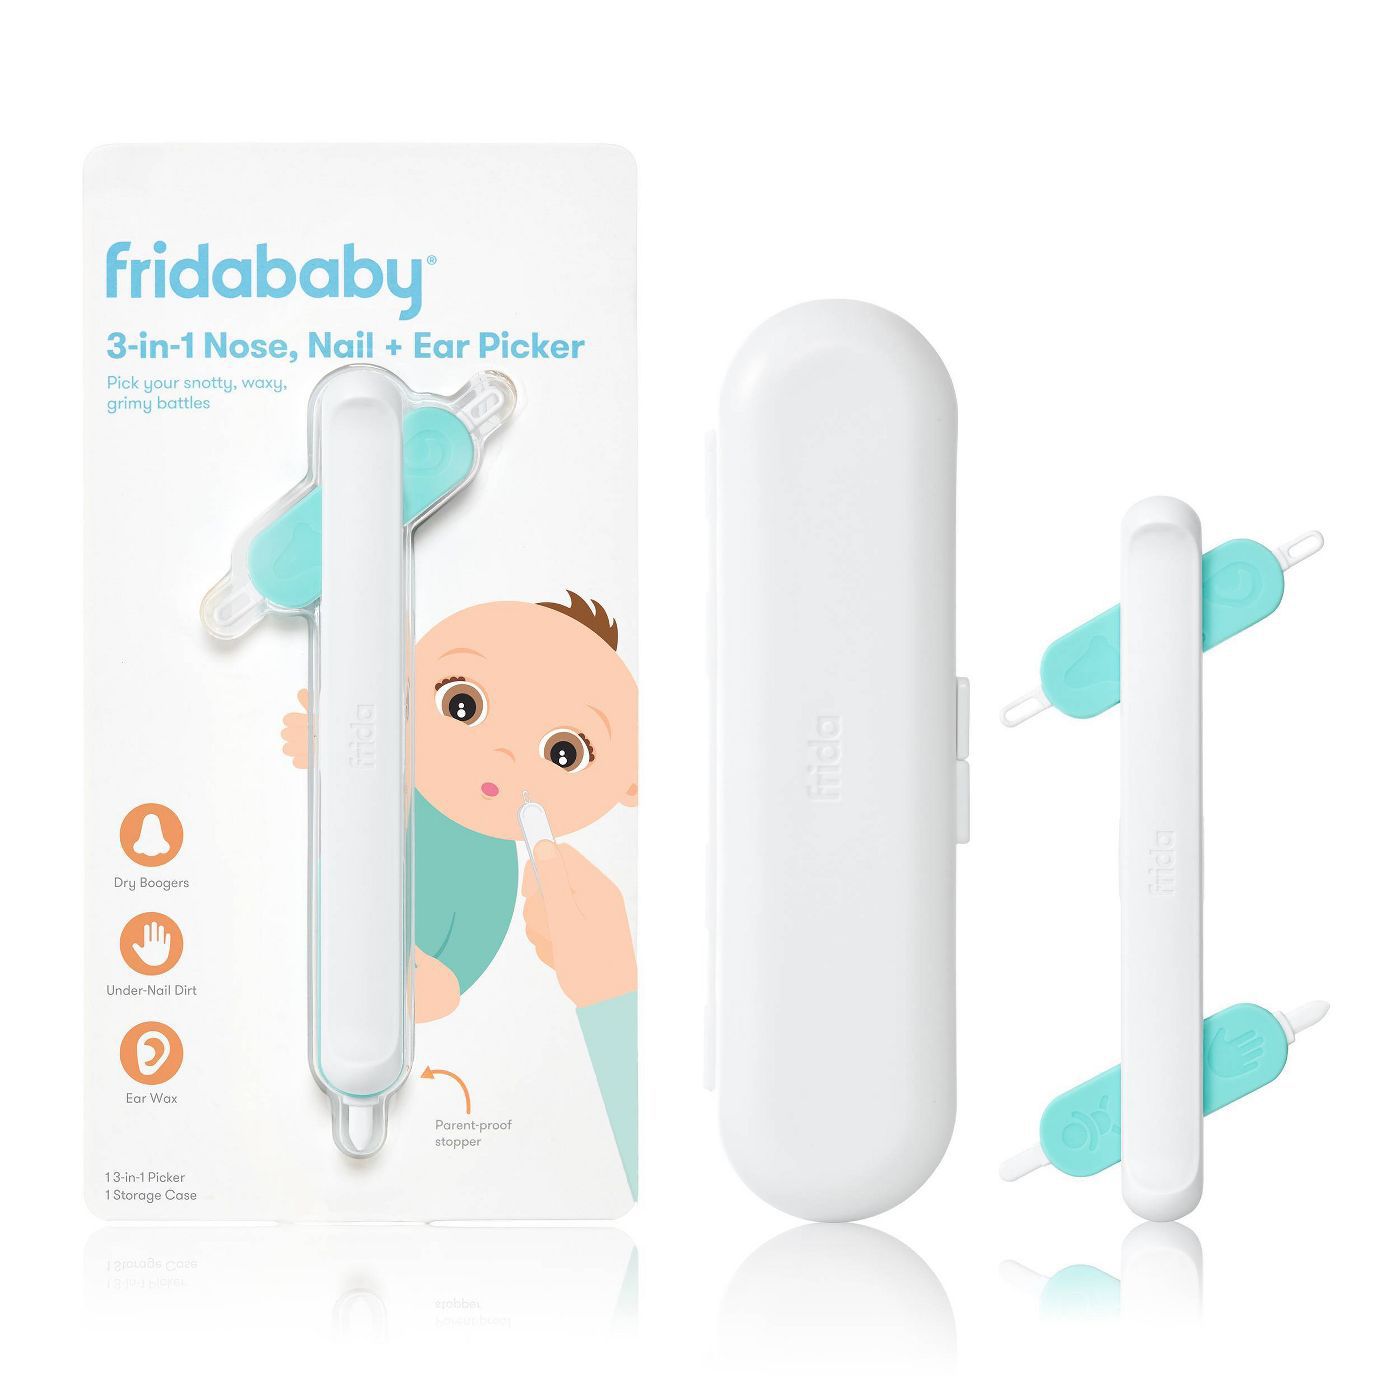 Best newborn baby gifts - Fridababy 3-in-1 Picker